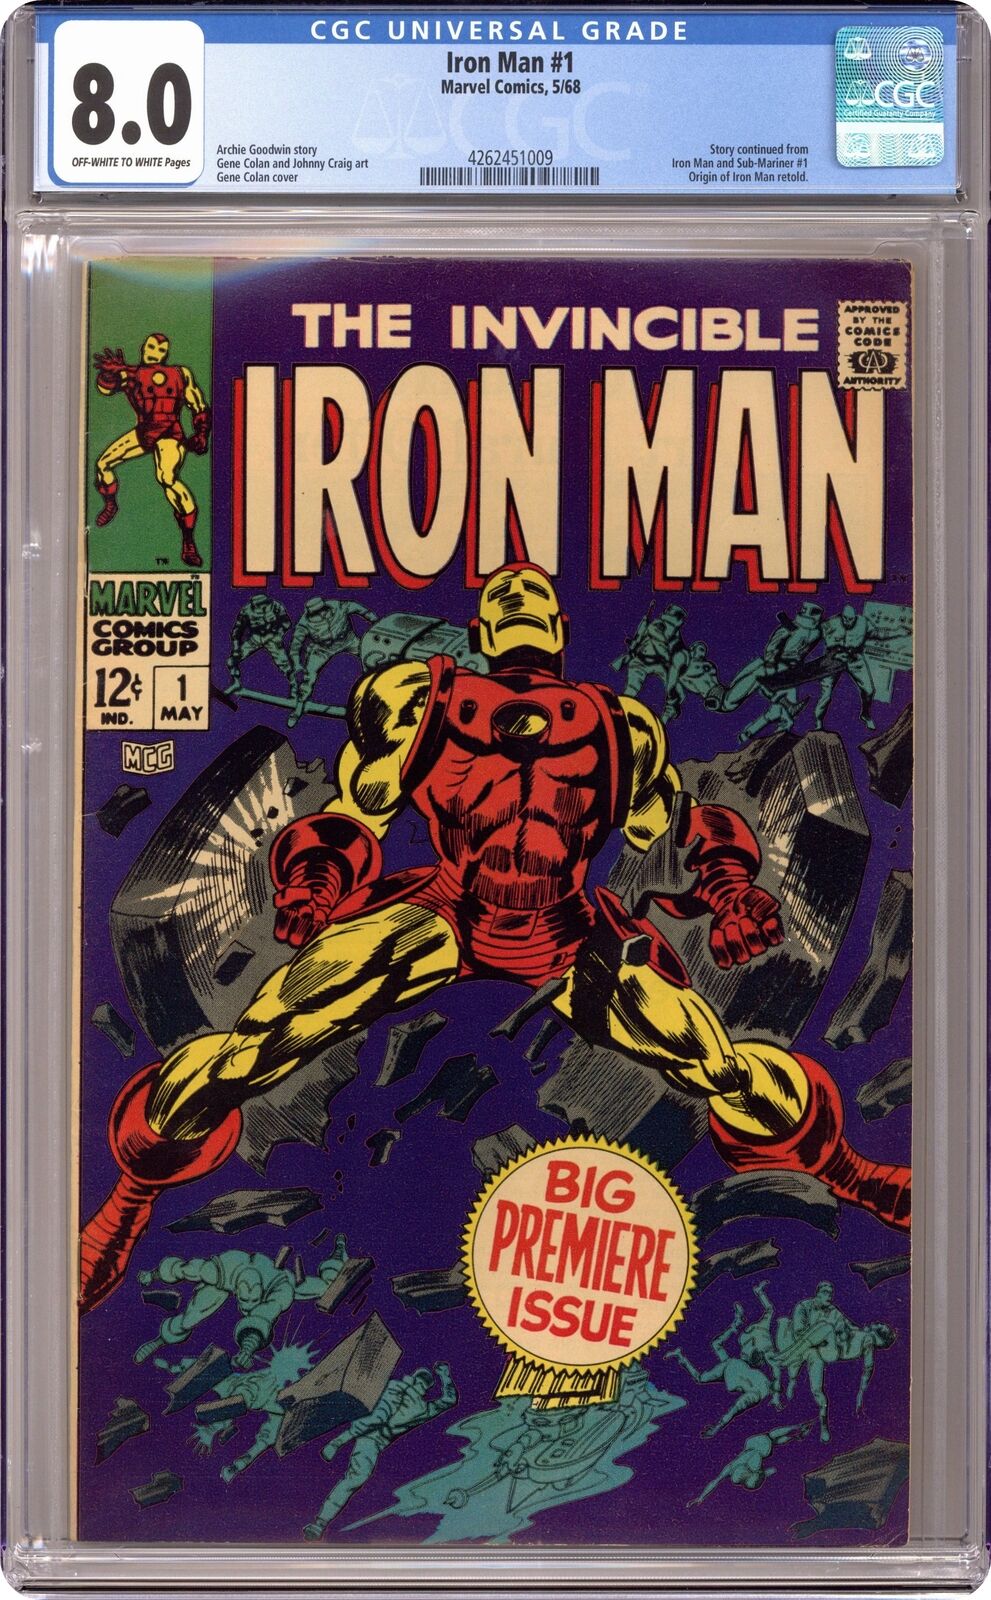 Iron Man #1 CGC 8.0 1968 4262451009